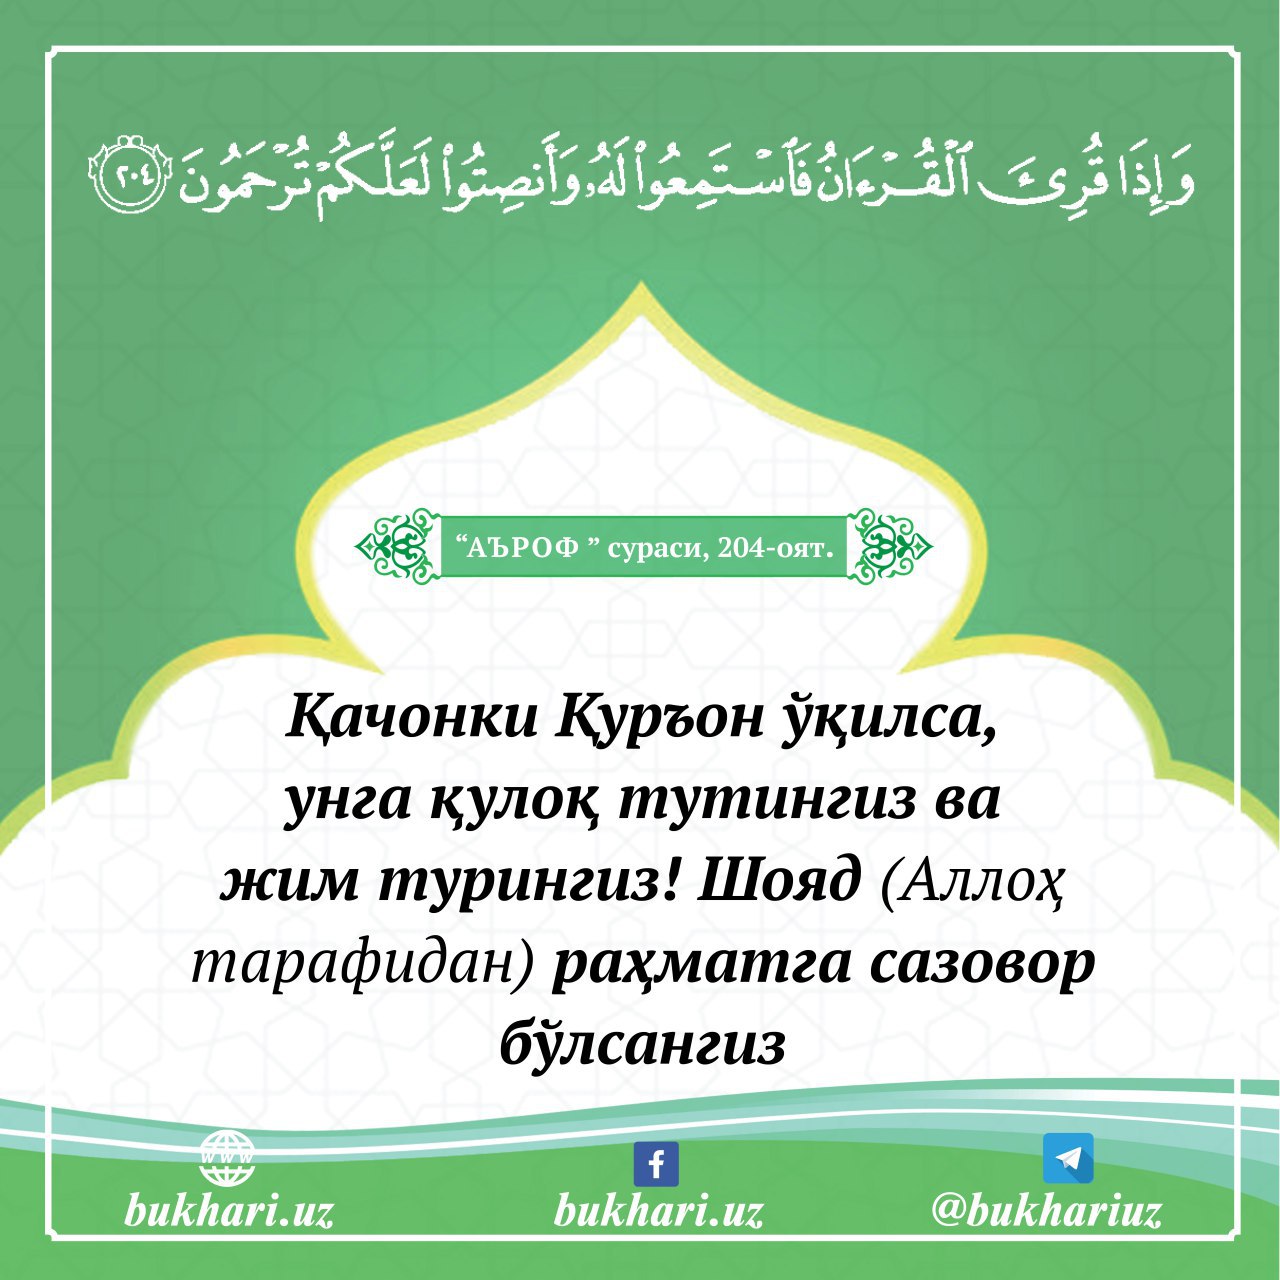 Калима сураси узбек тилида фото